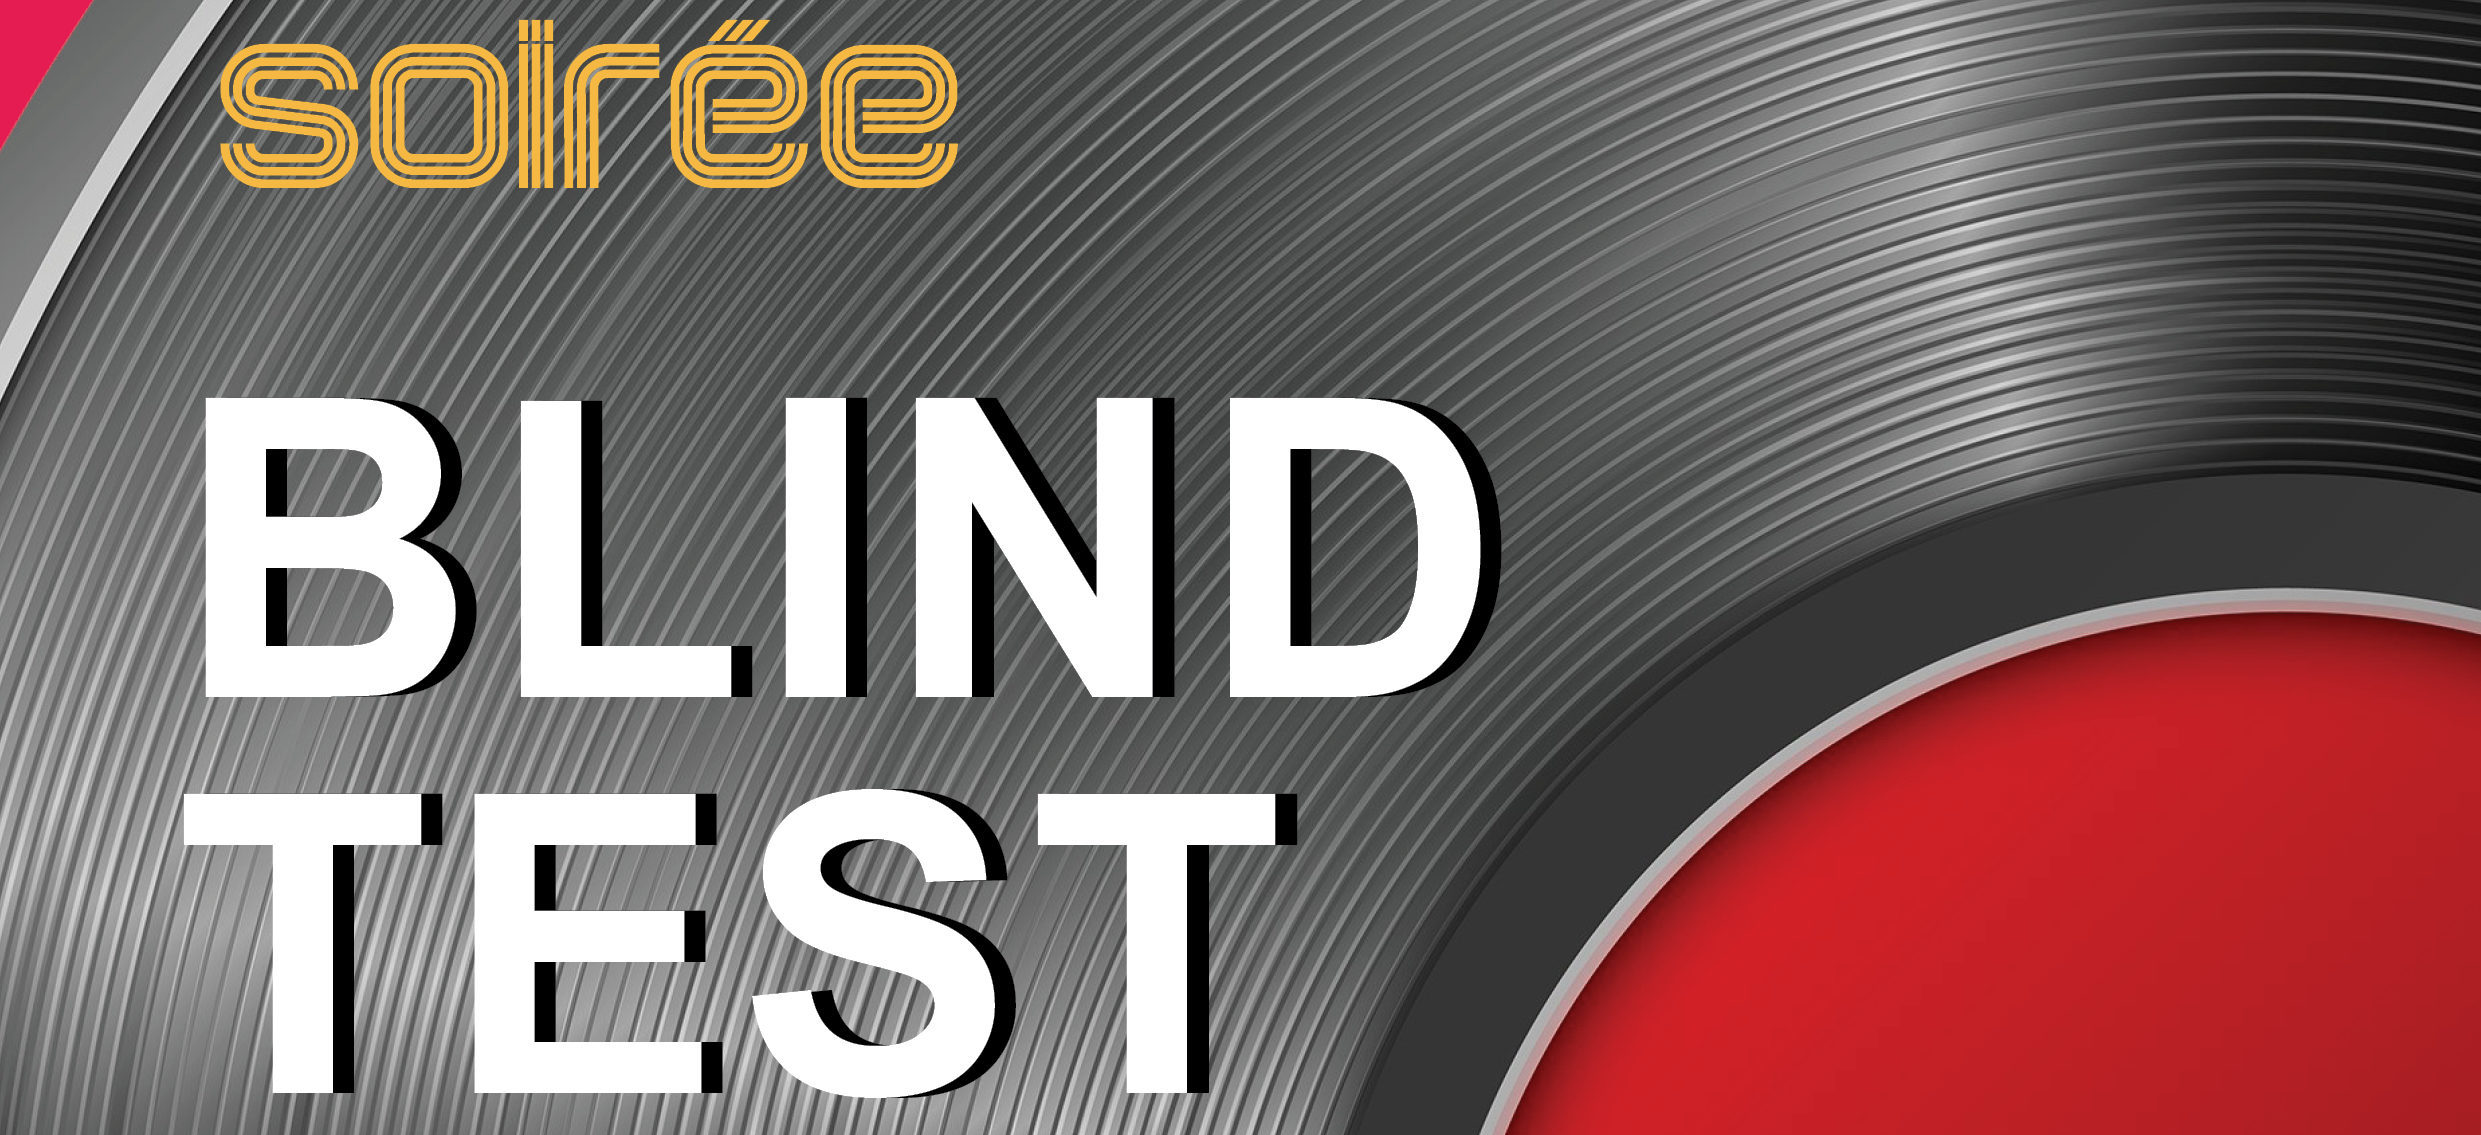 Blind Test Musical  Testez votre culture musicale